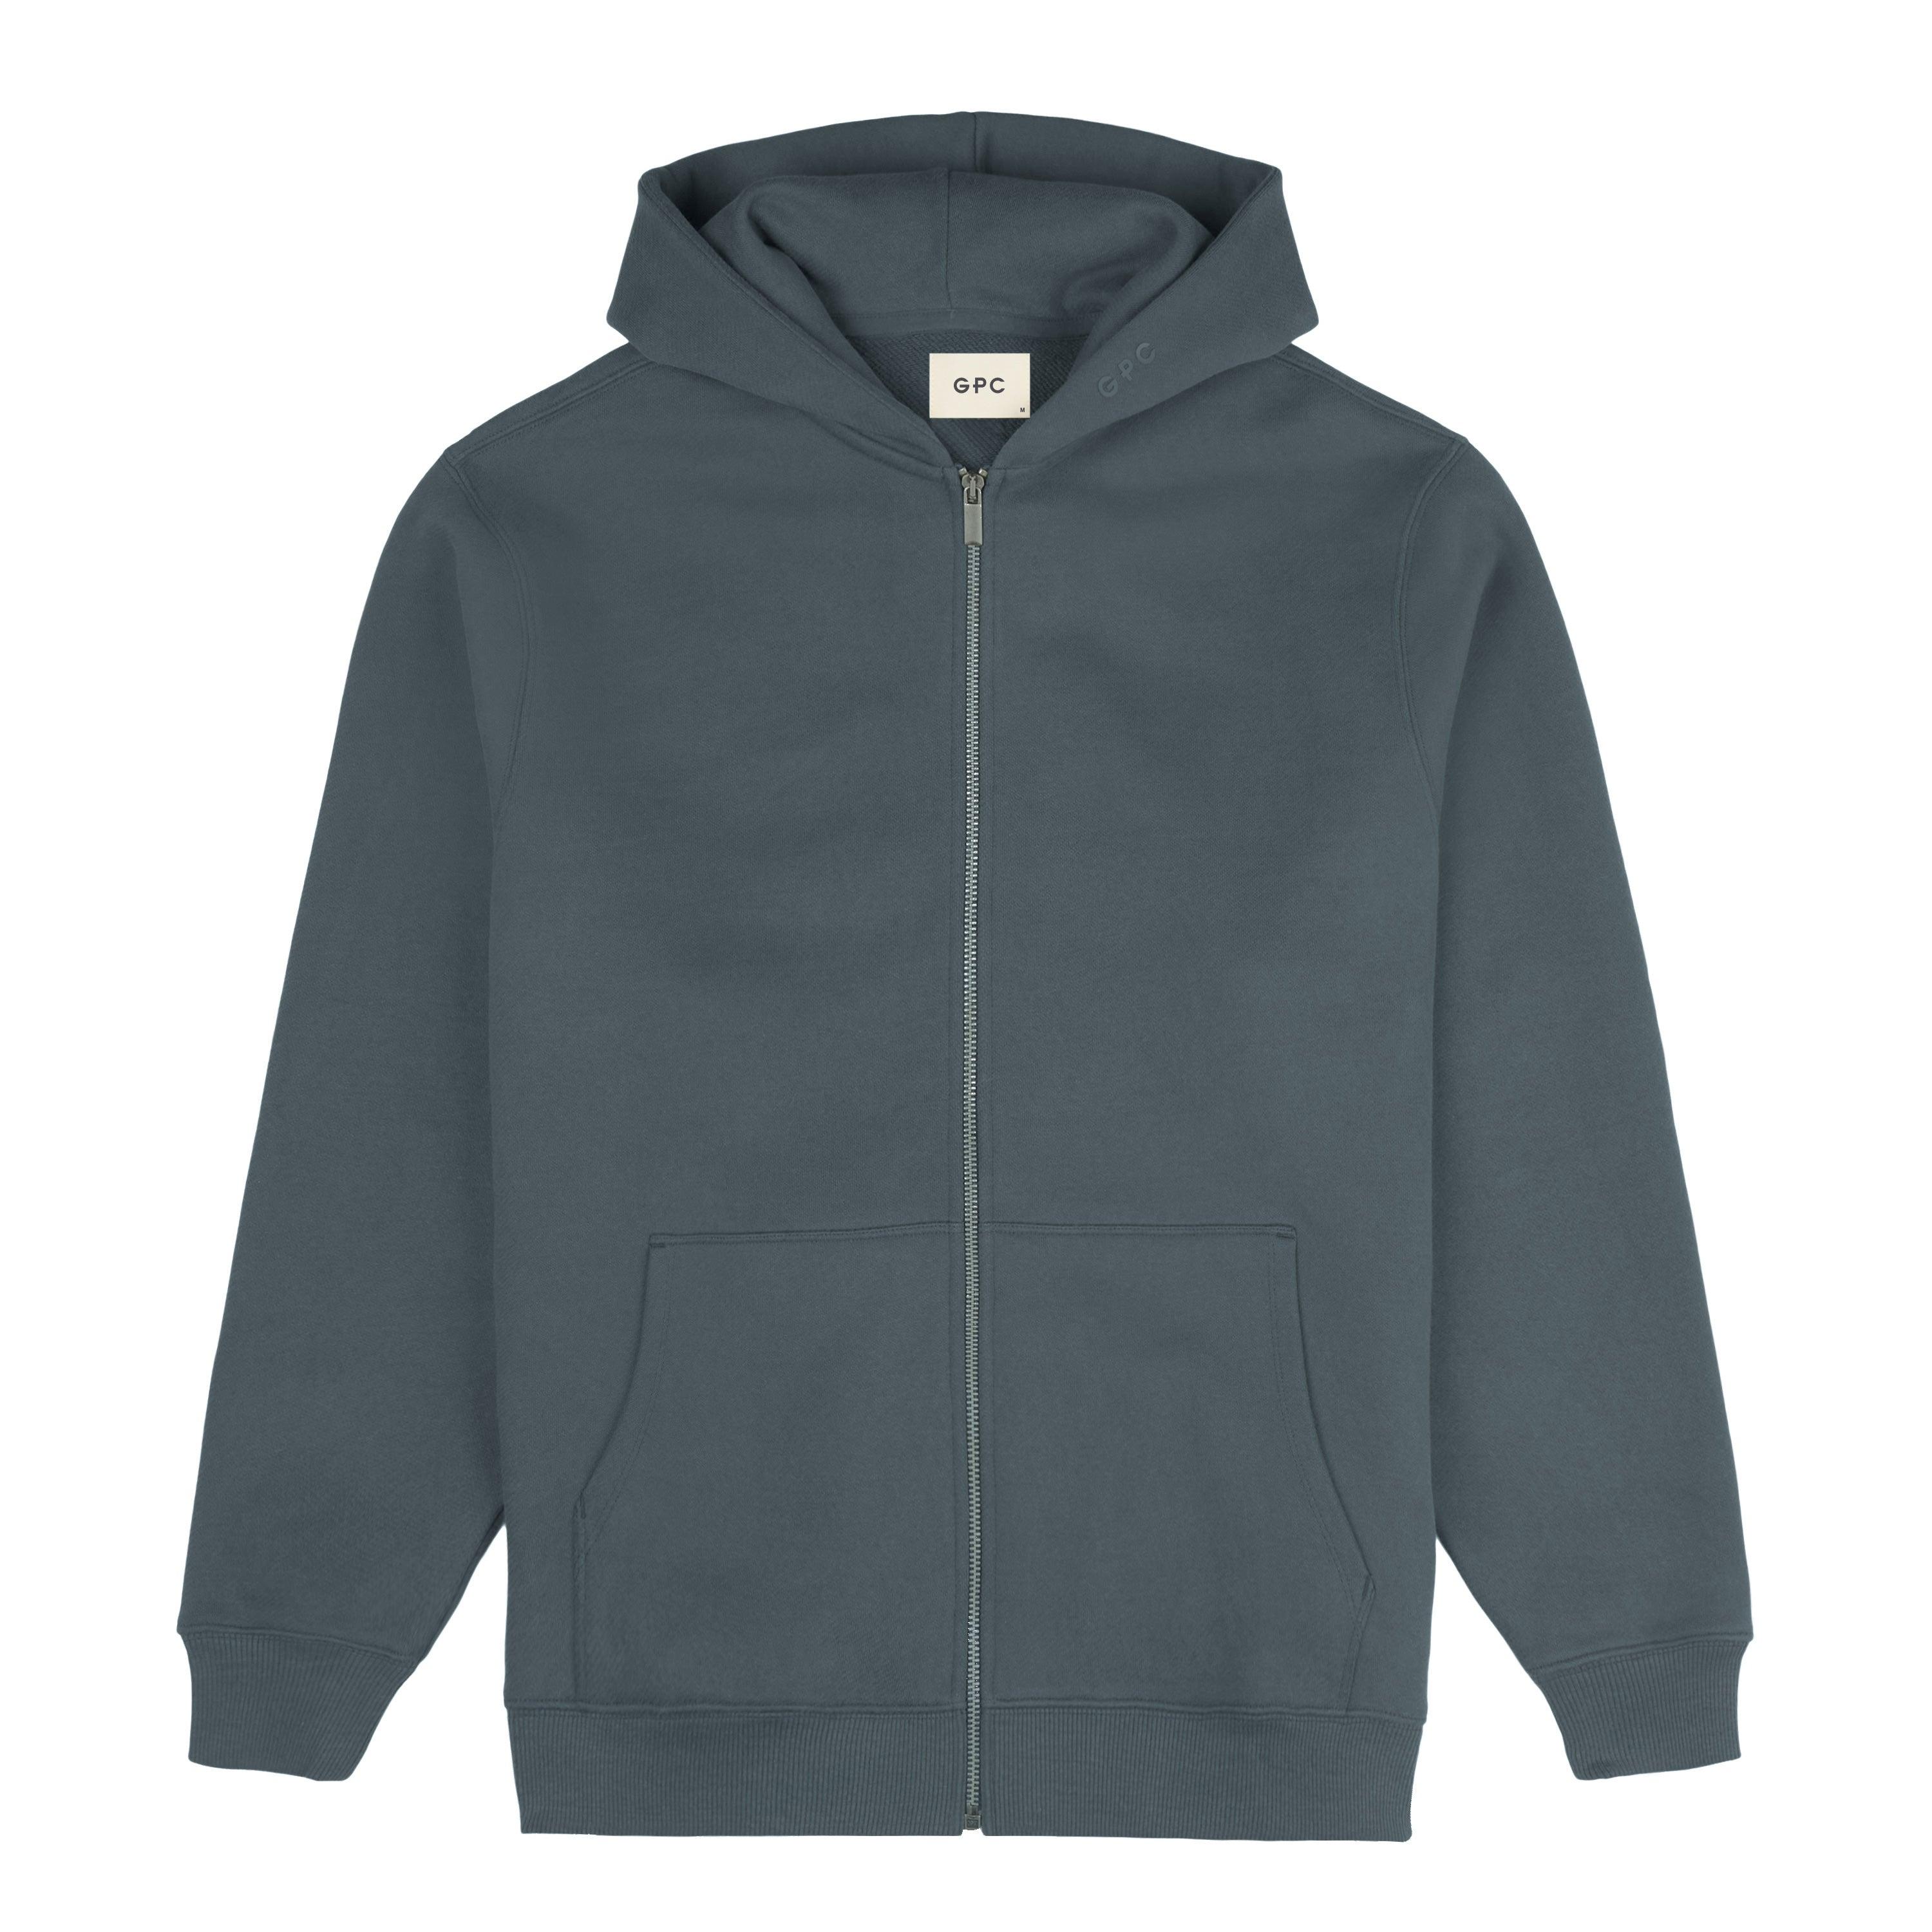 Buy Slate Grey Hoodie Premium Textured Overhead Hoodie from Next Belgium